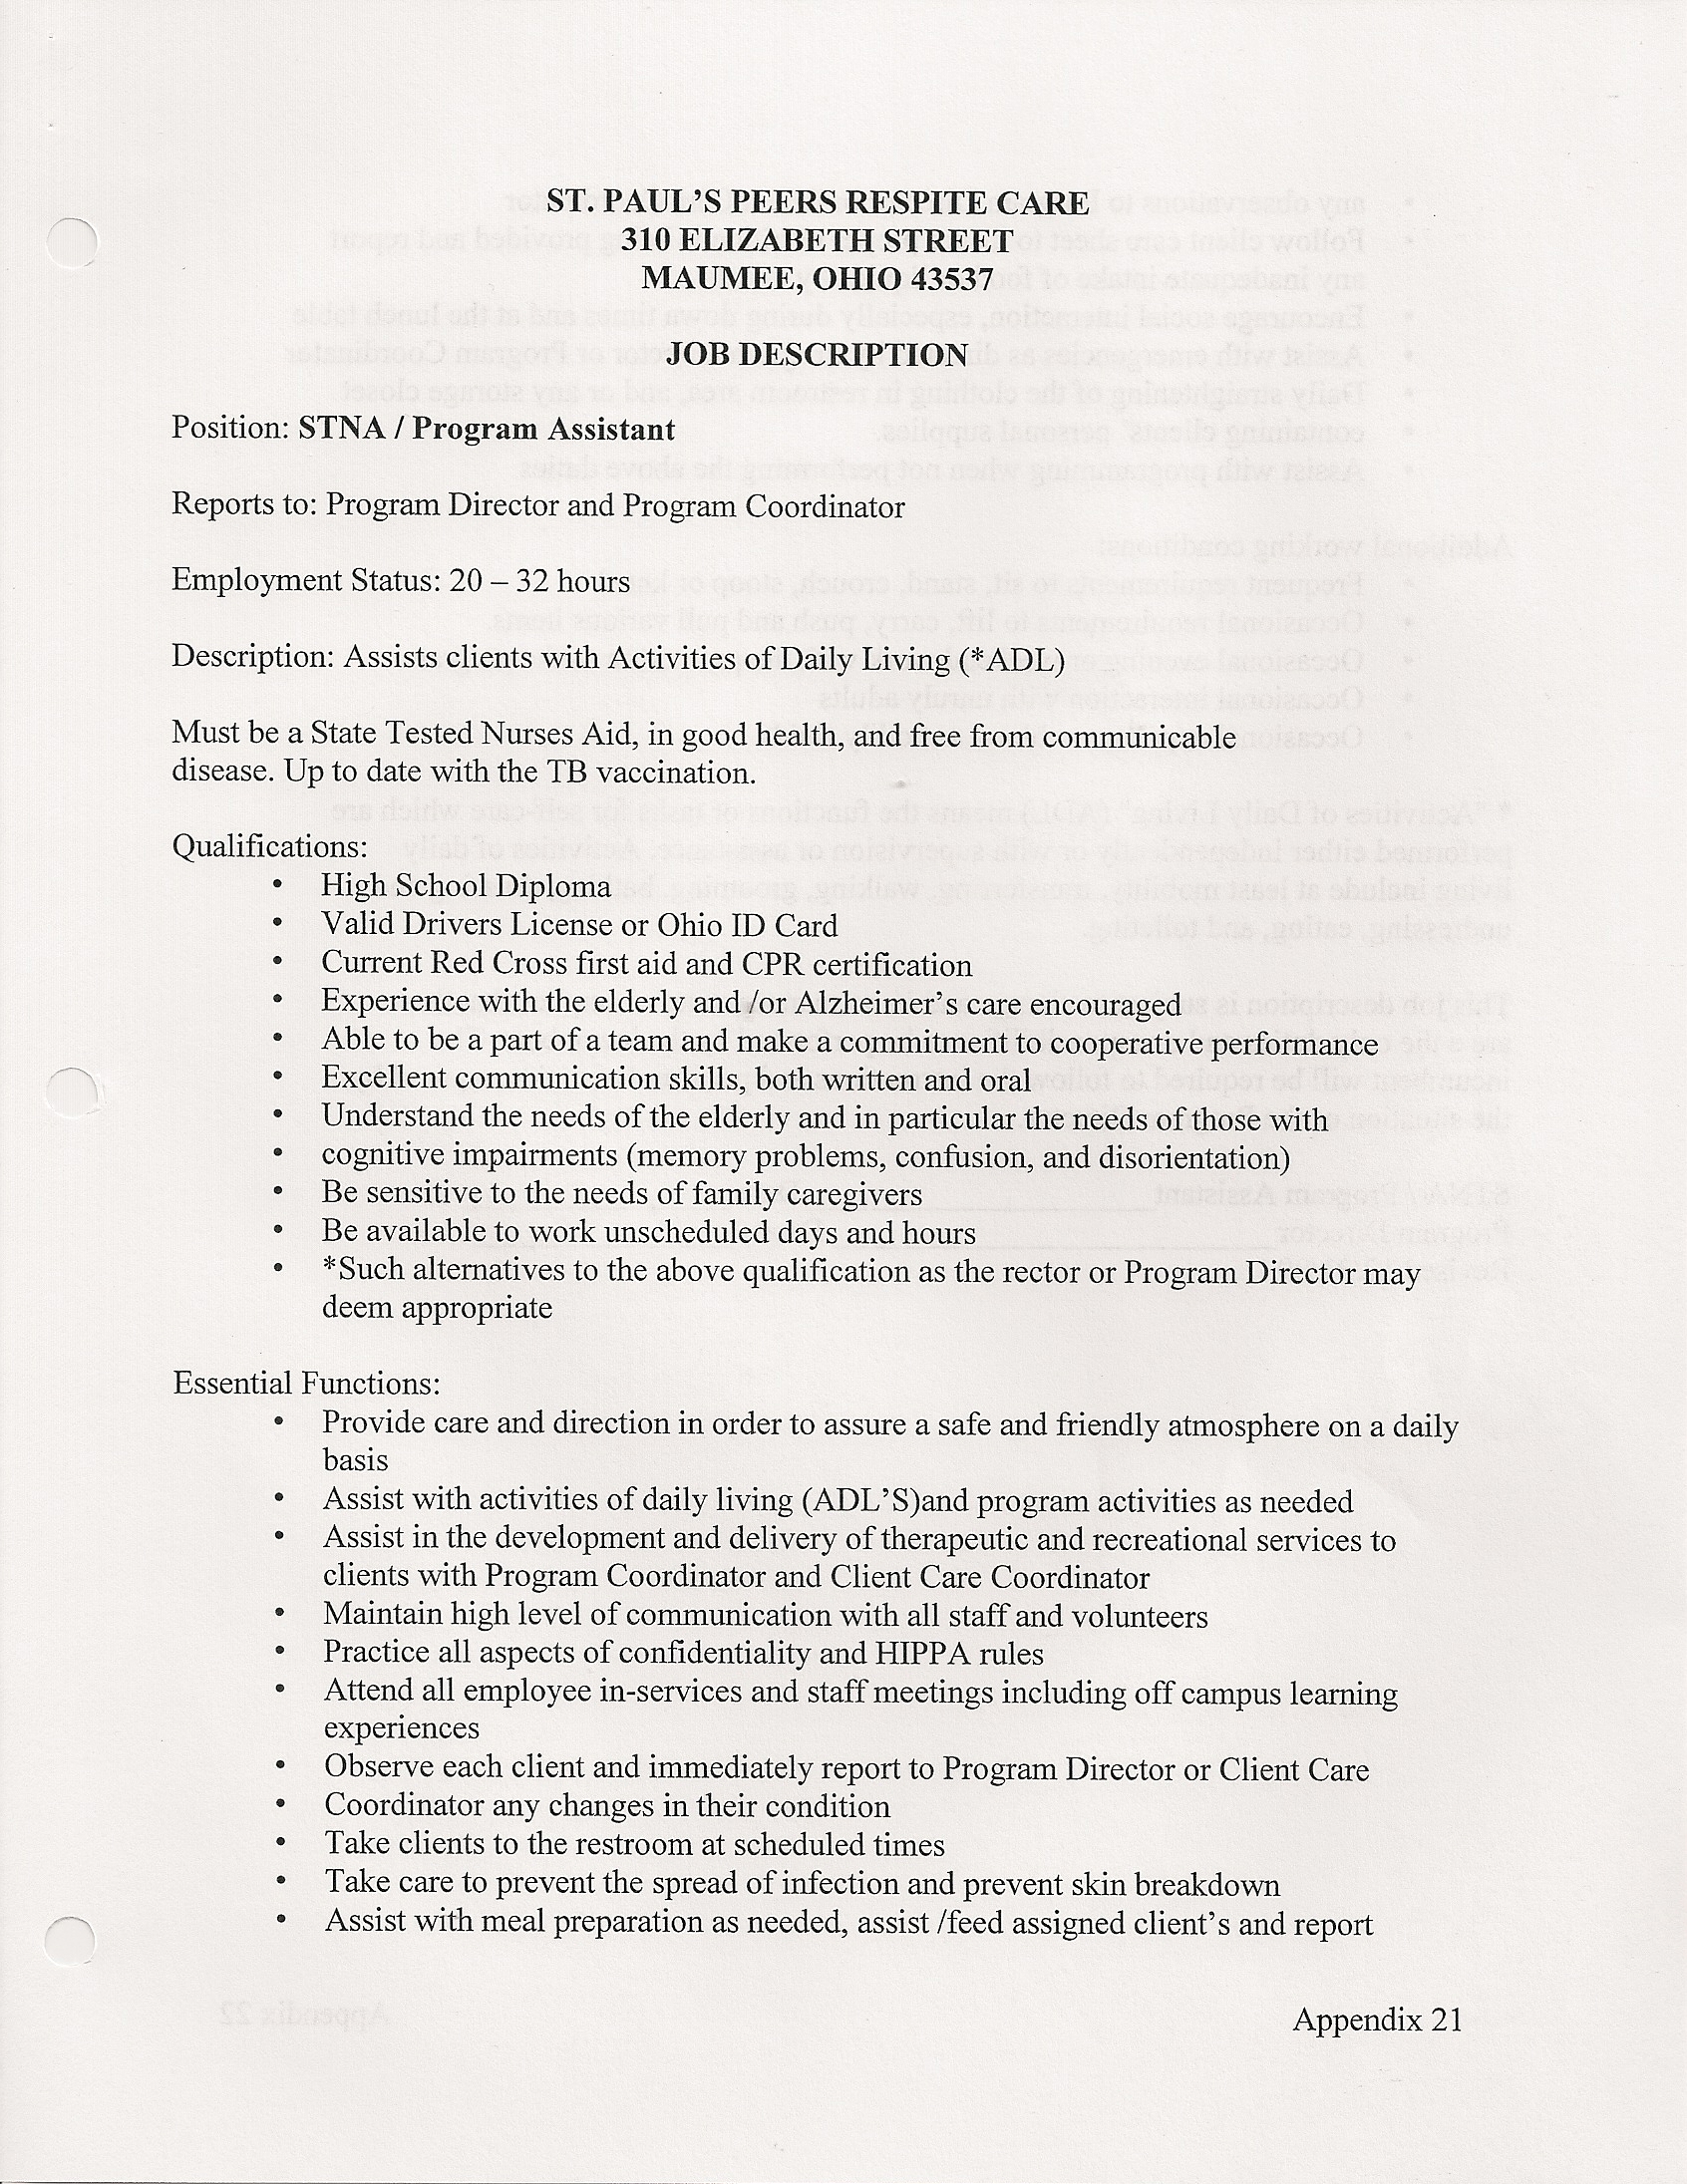 STNA/Program Assistant Job Description - page 1